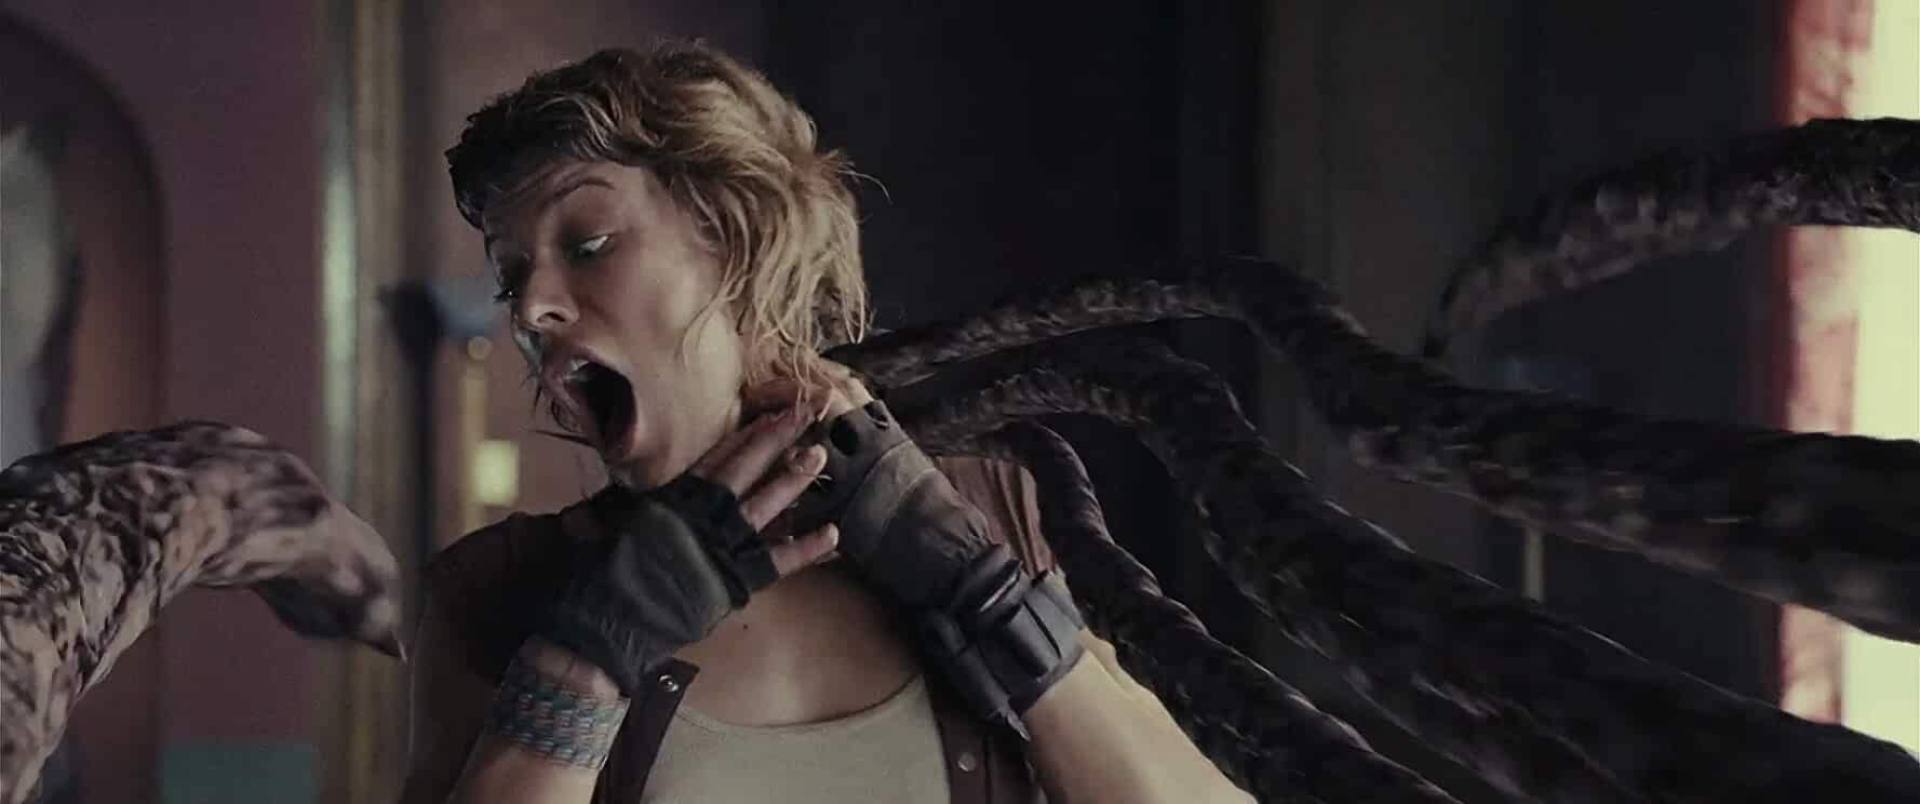 Where Was Resident Evil: Extinction Filmed?